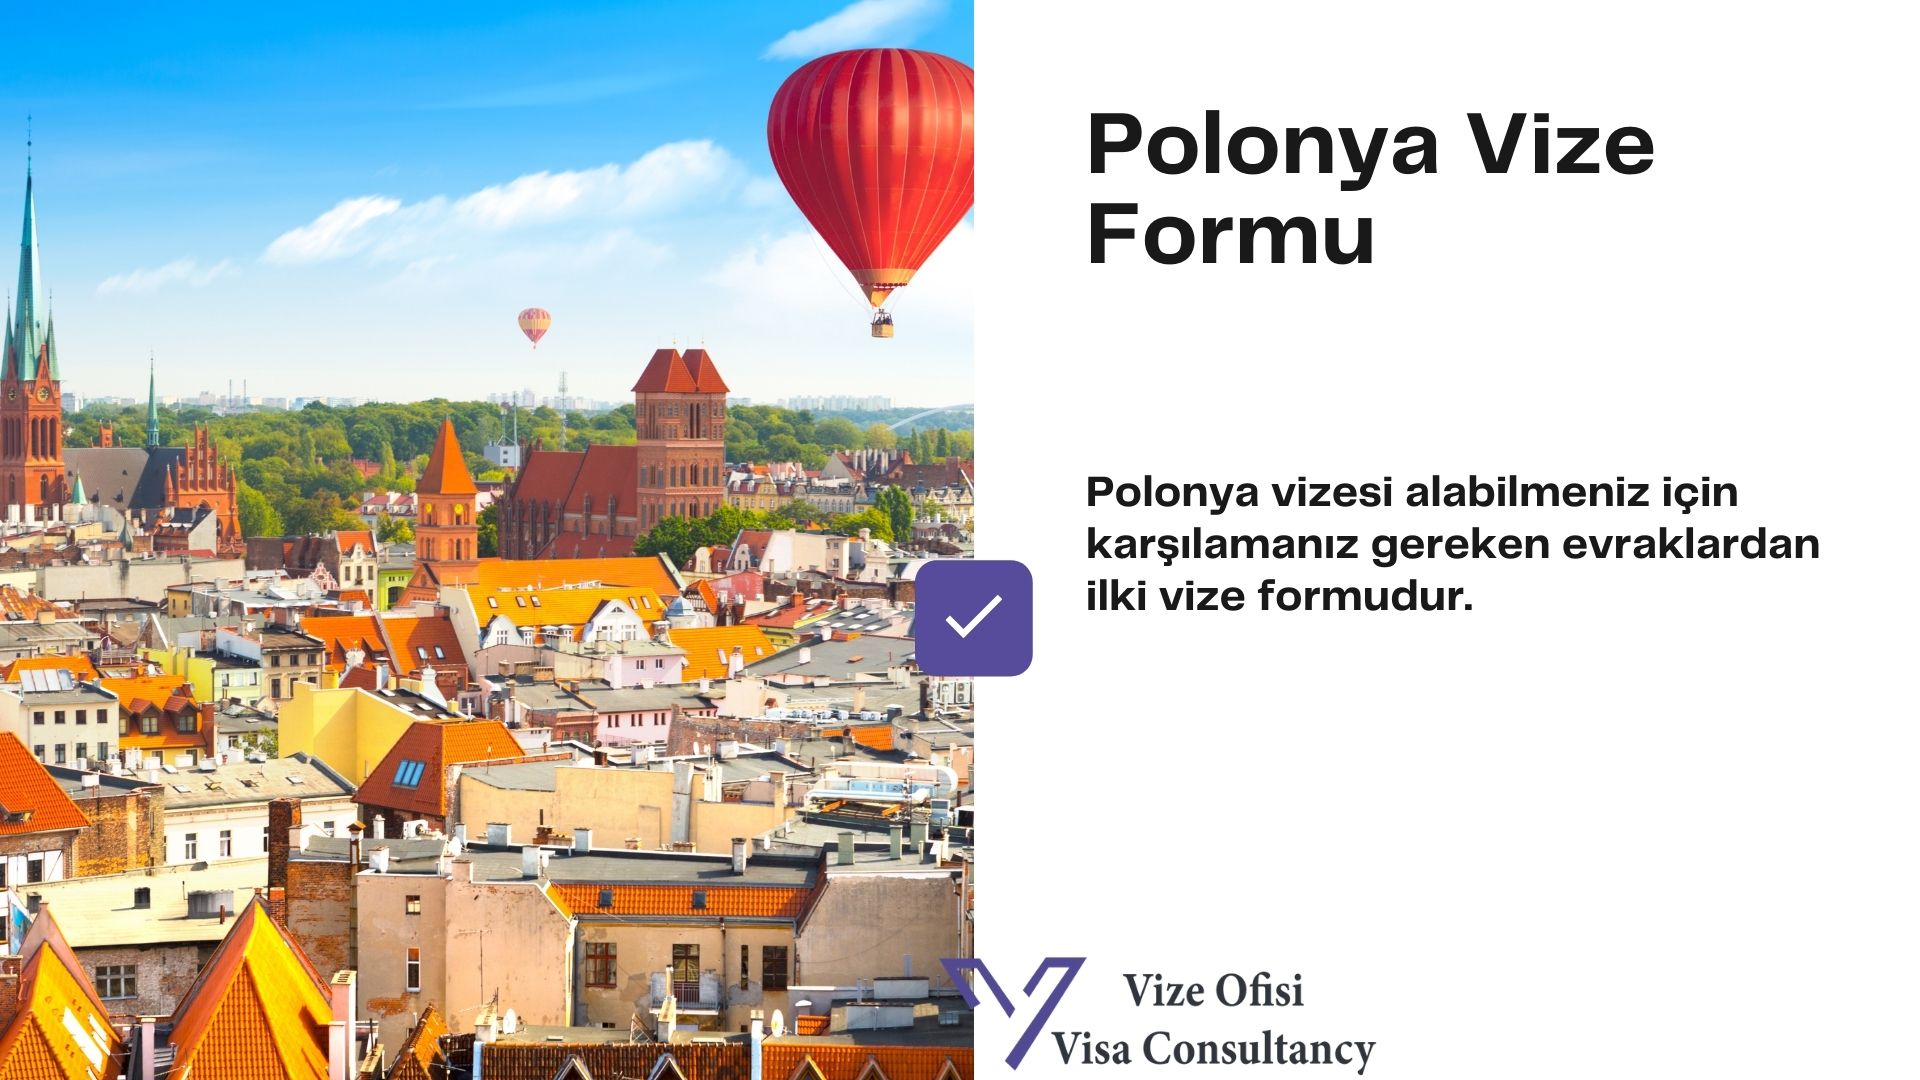 Polonya Vize Form ve Dilekçe 2021